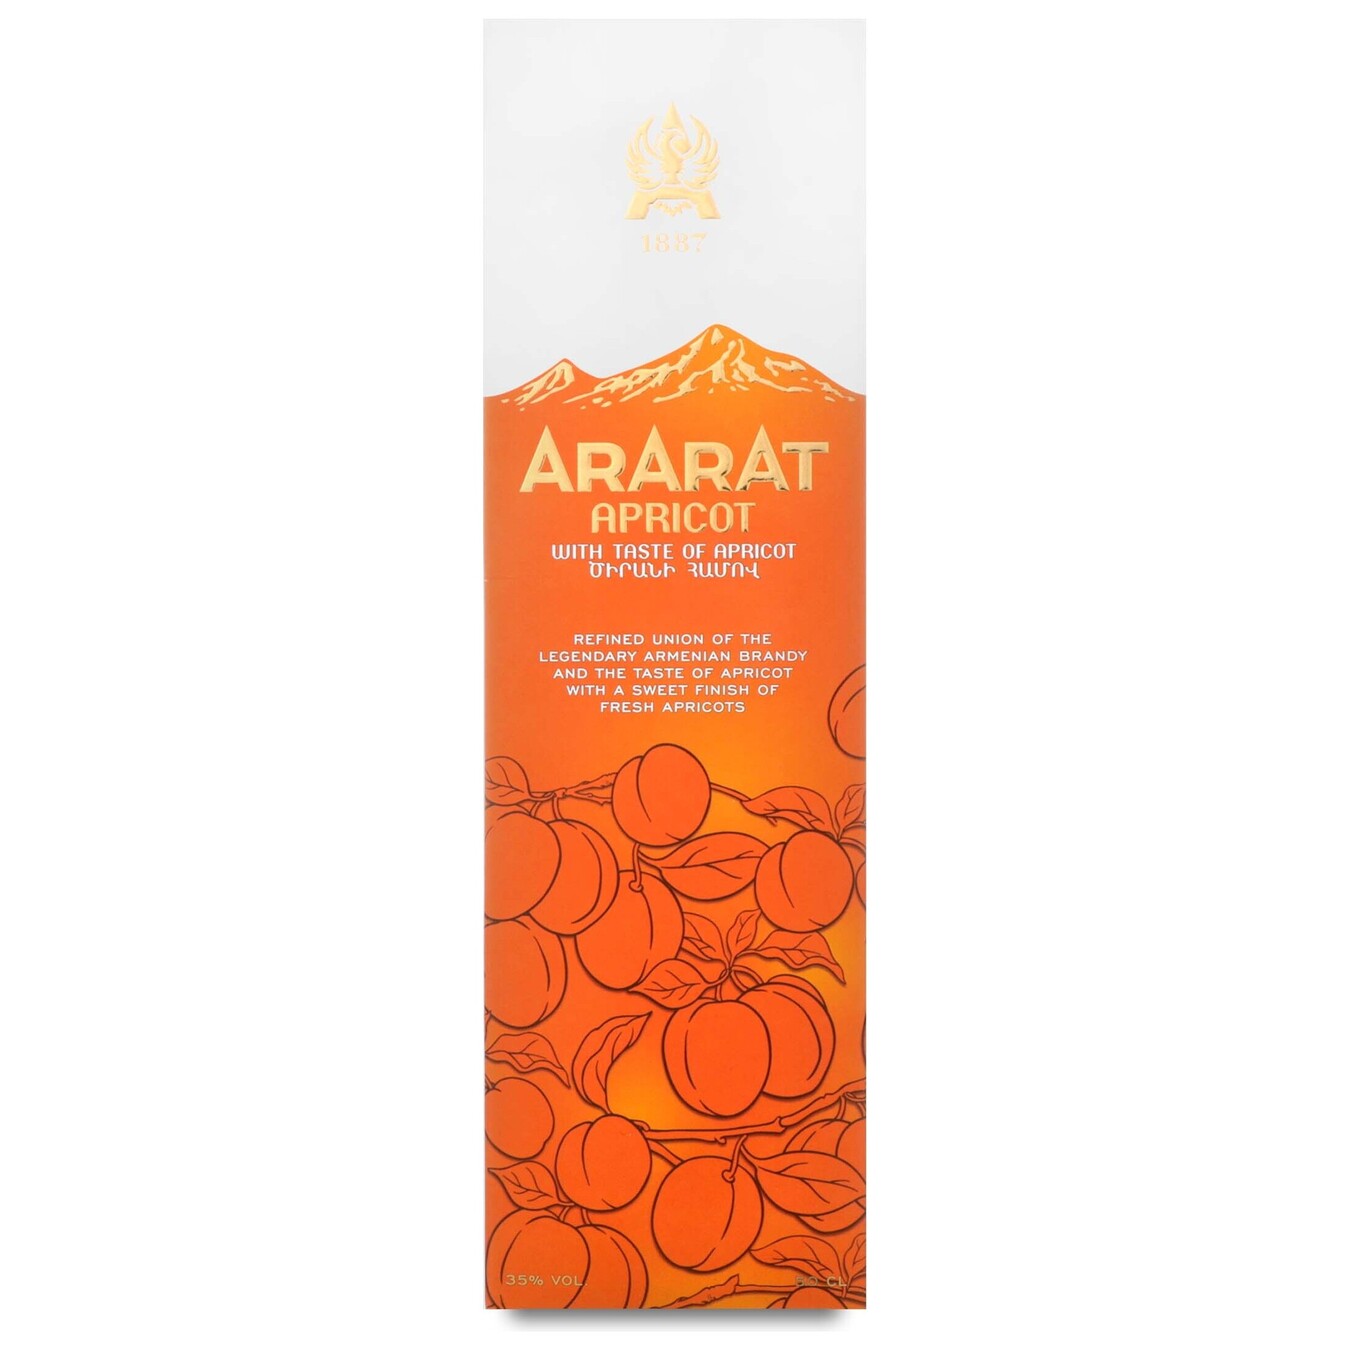 Armenian brandy Ararat Apricot 35% 0.5 l in a box